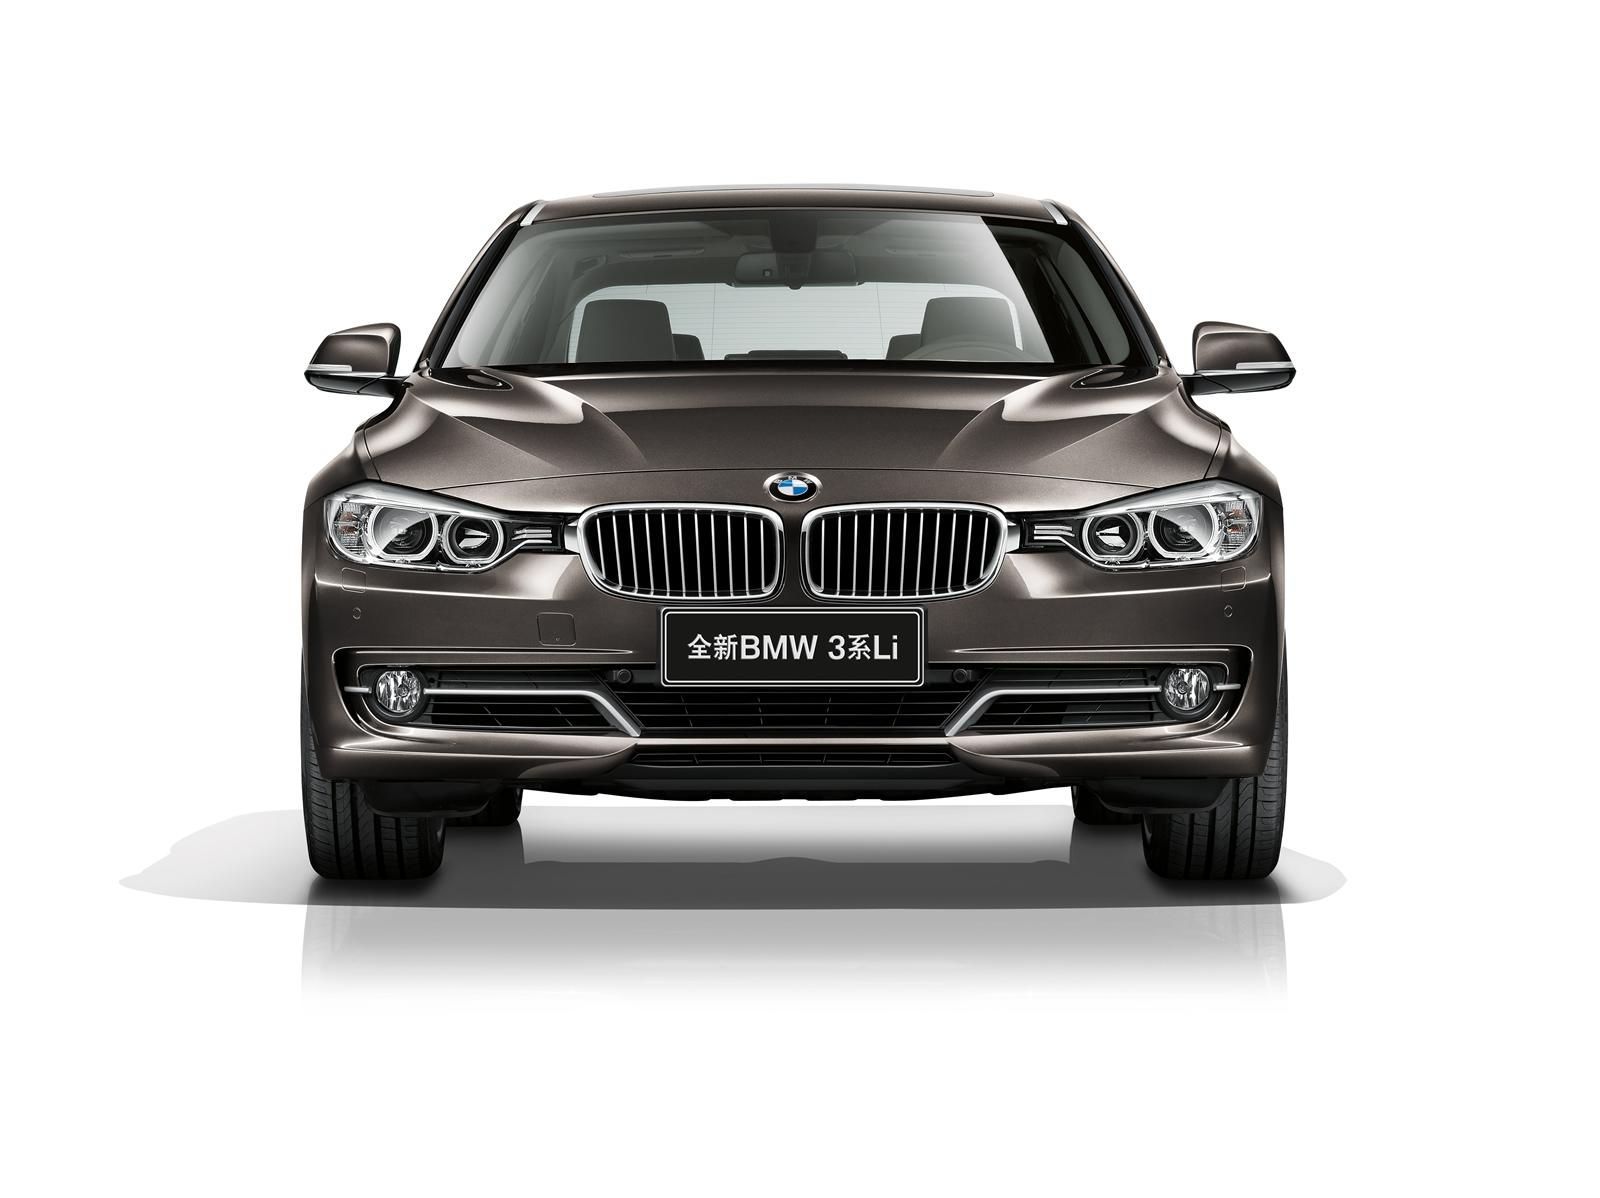 2013 BMW 3-Series LWB